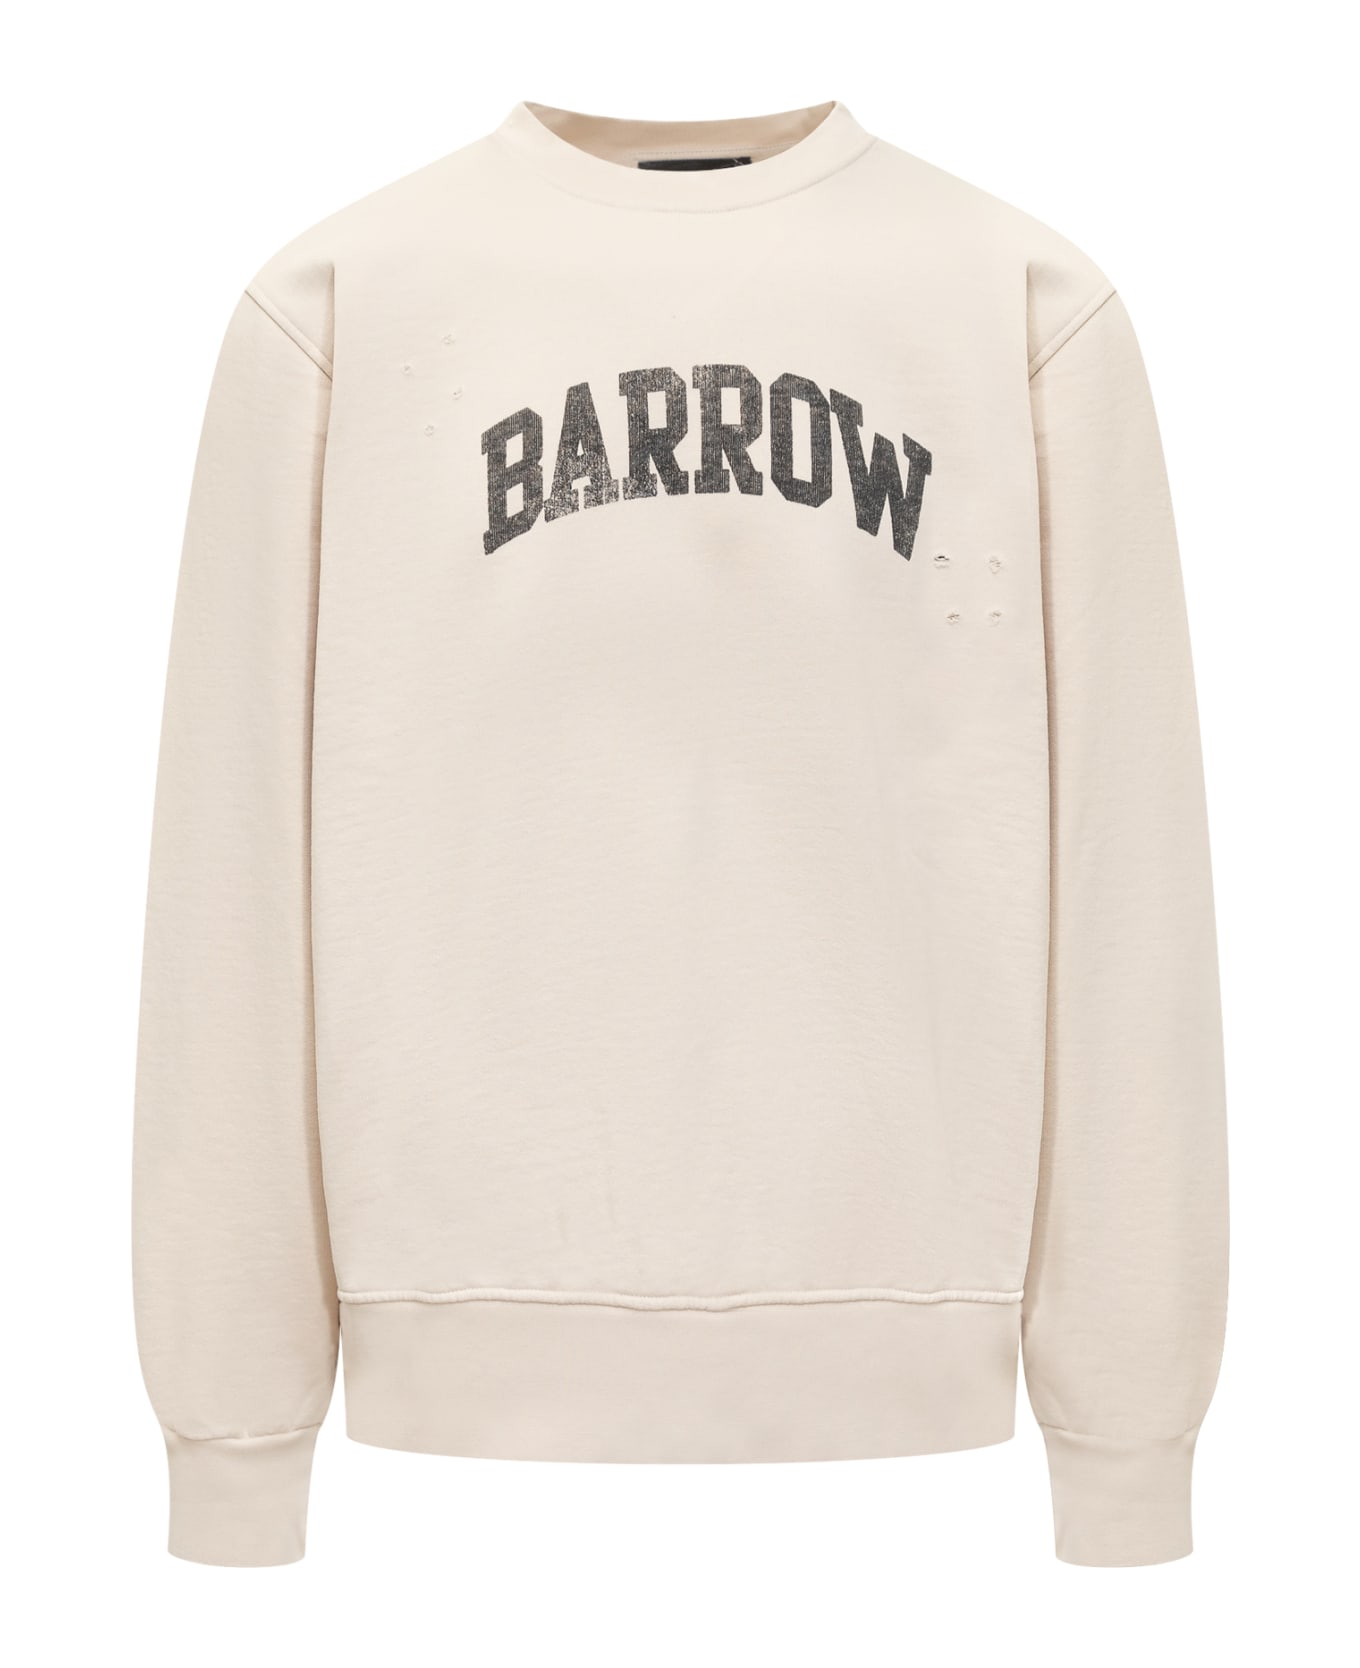 Barrow Sweatshirt フリース